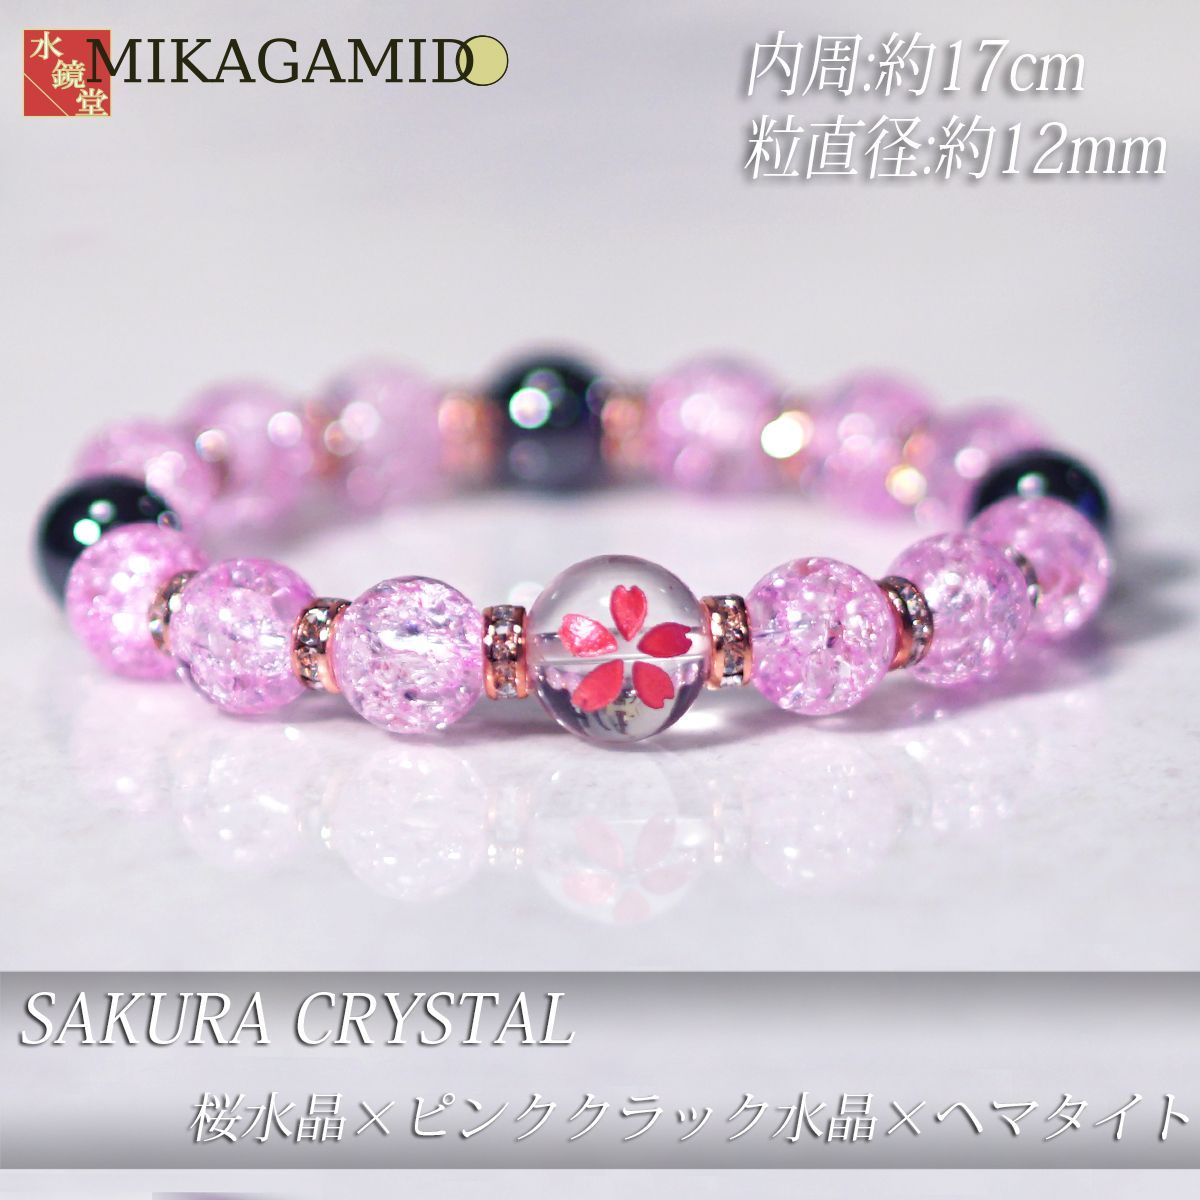 新品 送料無料 春ブレス 10mm ピンク彫桜水晶 本水晶 天然石 パワーストーン ブレスレット